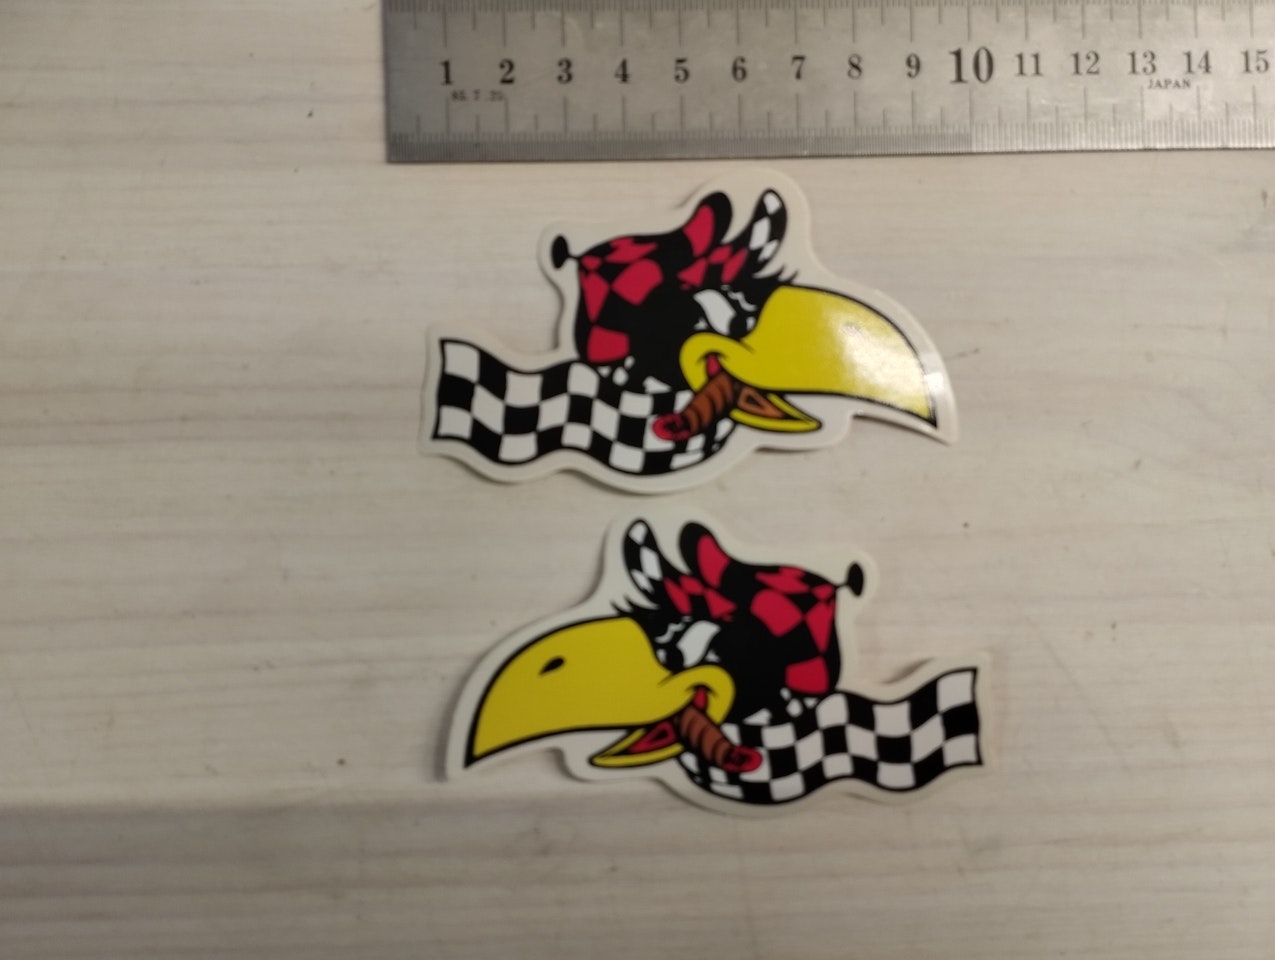 Woodpecker Dekalset "small" https://seastreetgarage.se/dekaler/woodpecker-dekalset-small Klassisk dekal från förr. kommer från gammalt lager. set med höger/vänsterBredd: c:a 10cm